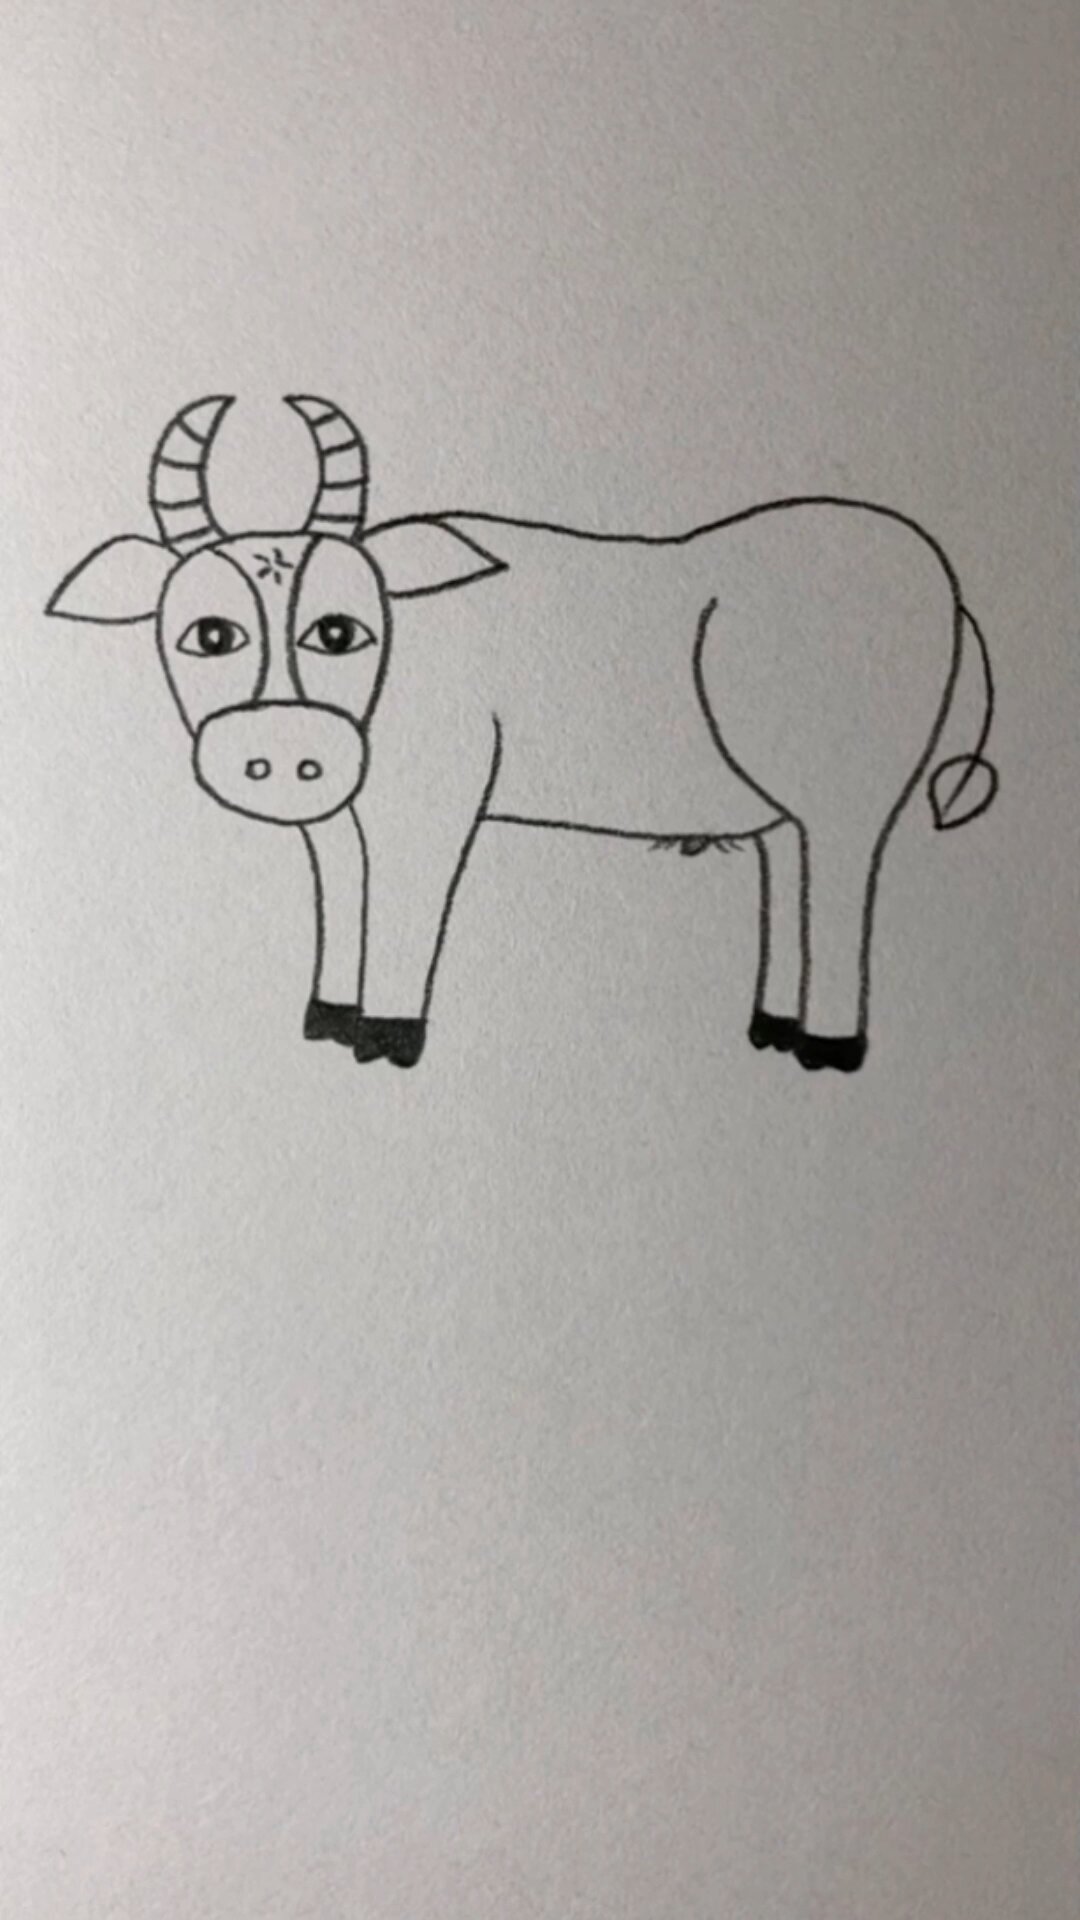 画牛的图片大全 简单图片